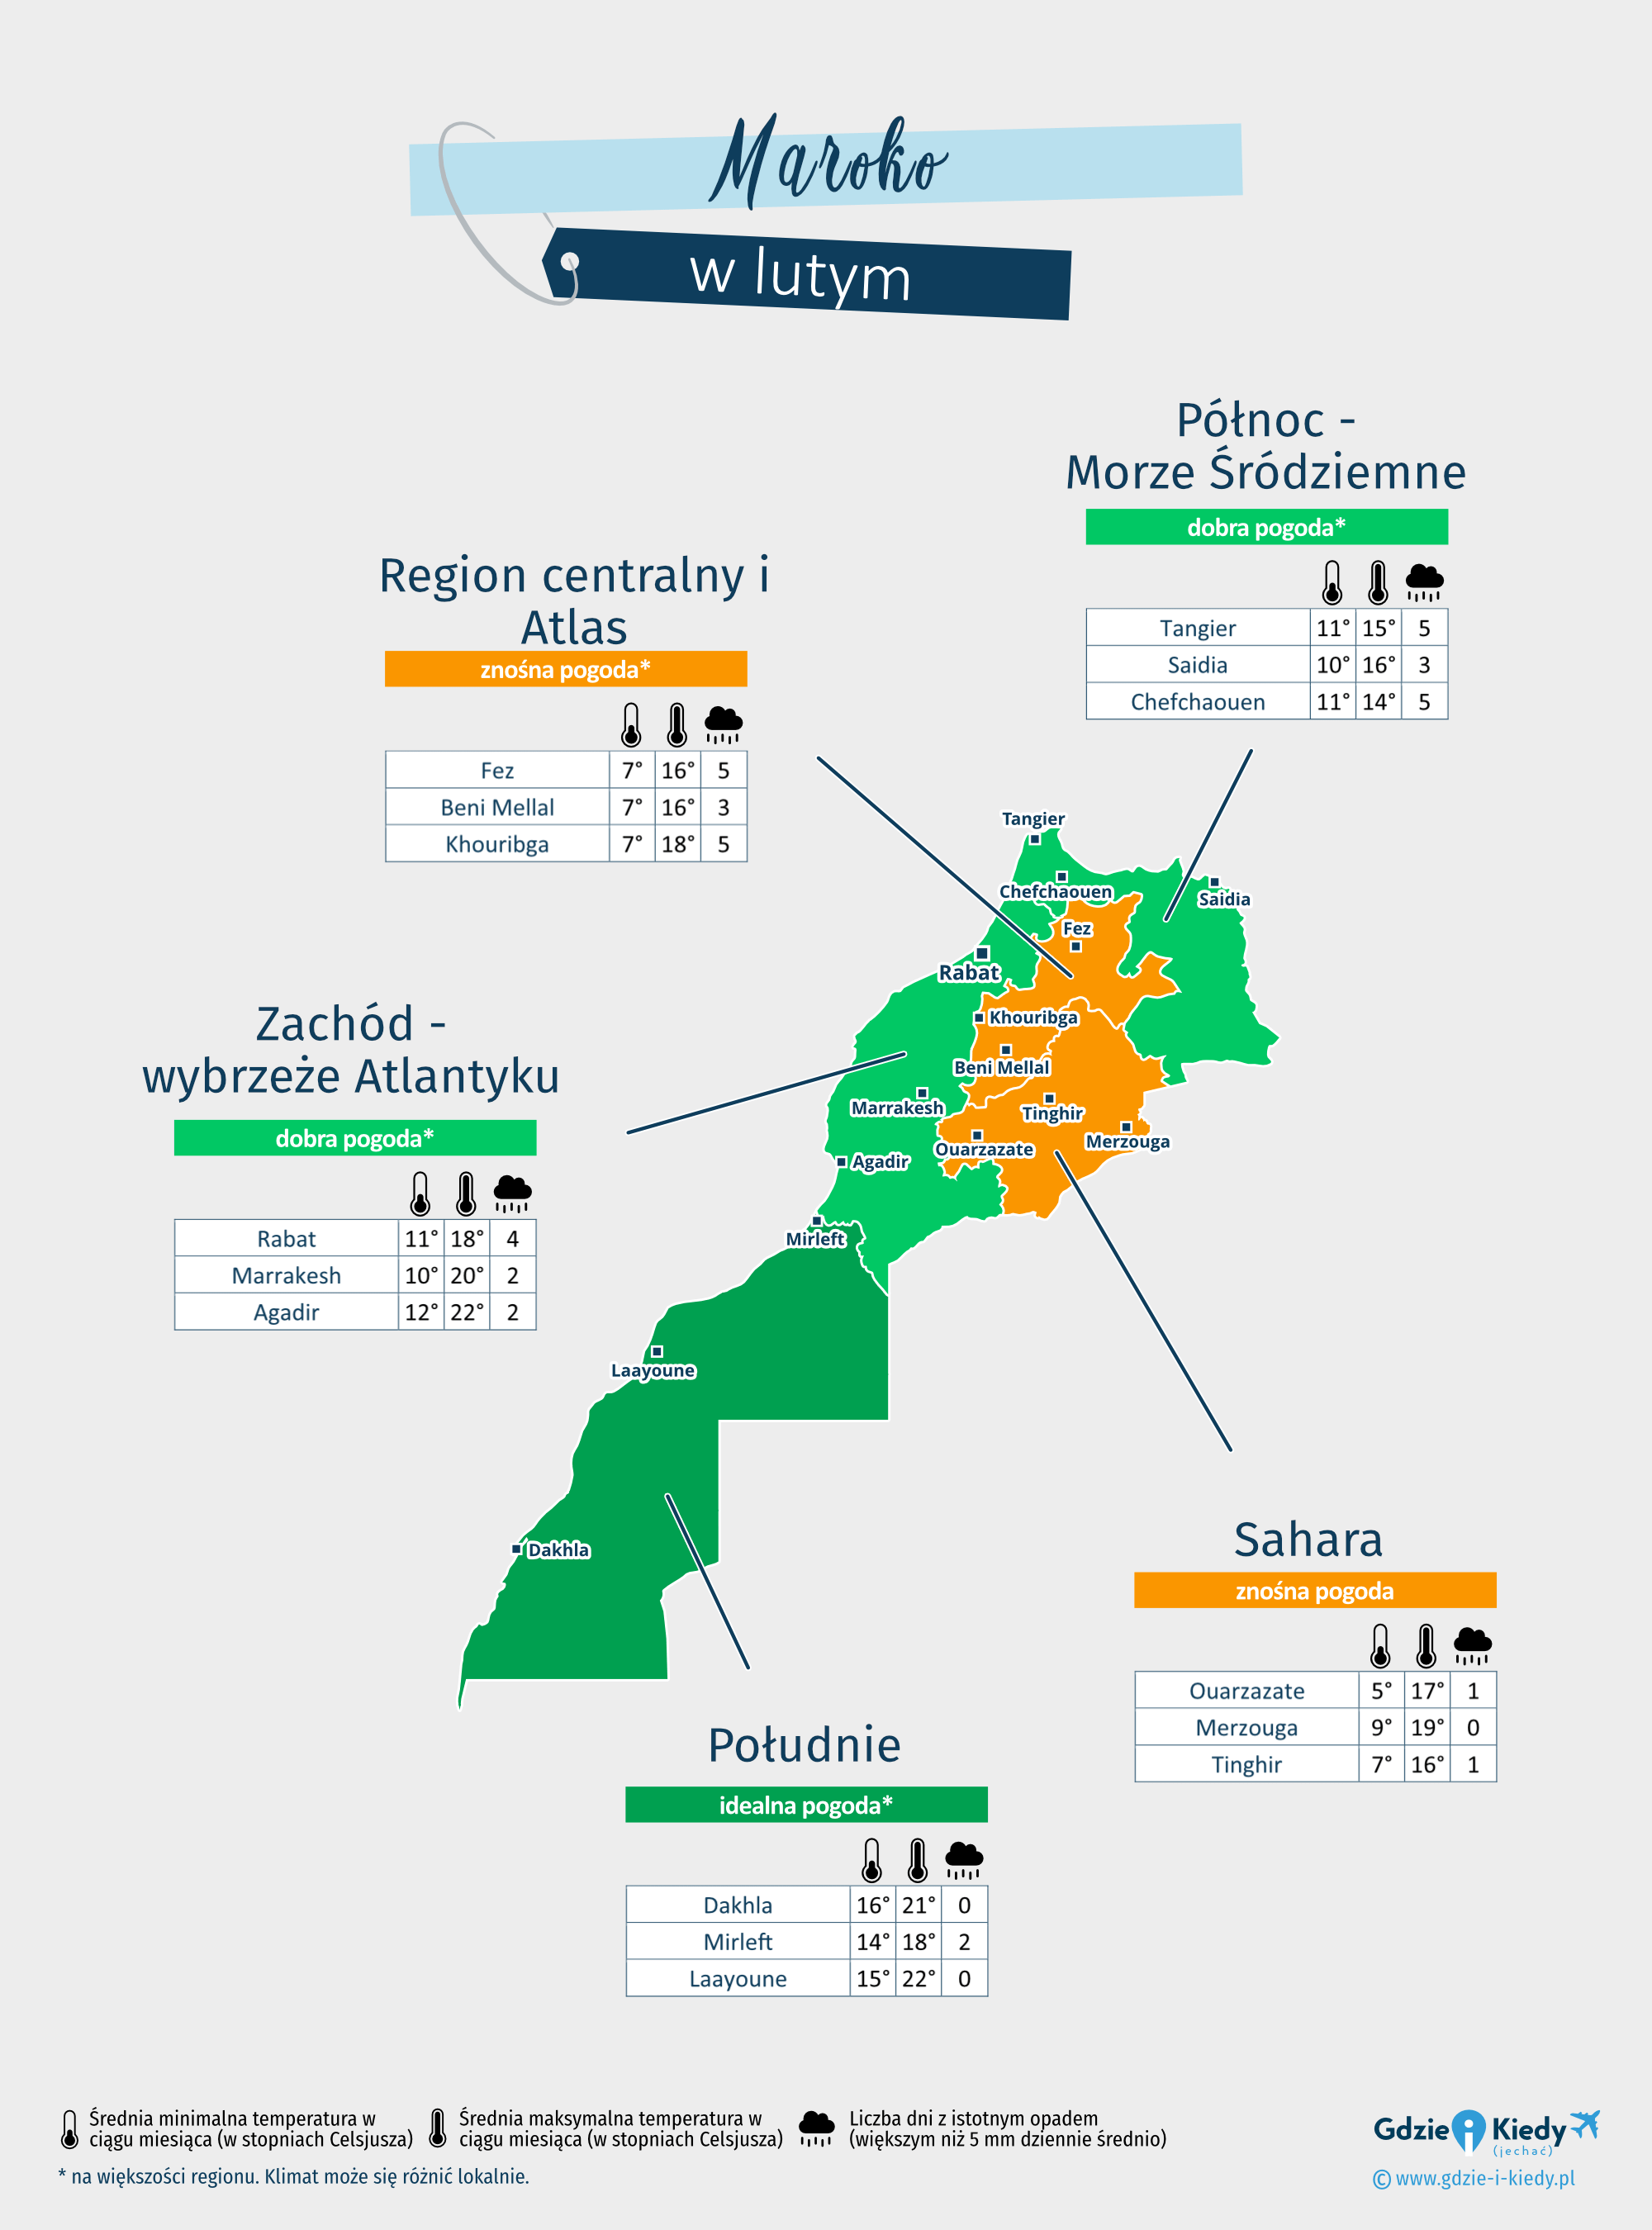 Maroko: mapa pogody w lutym w różnych regionach